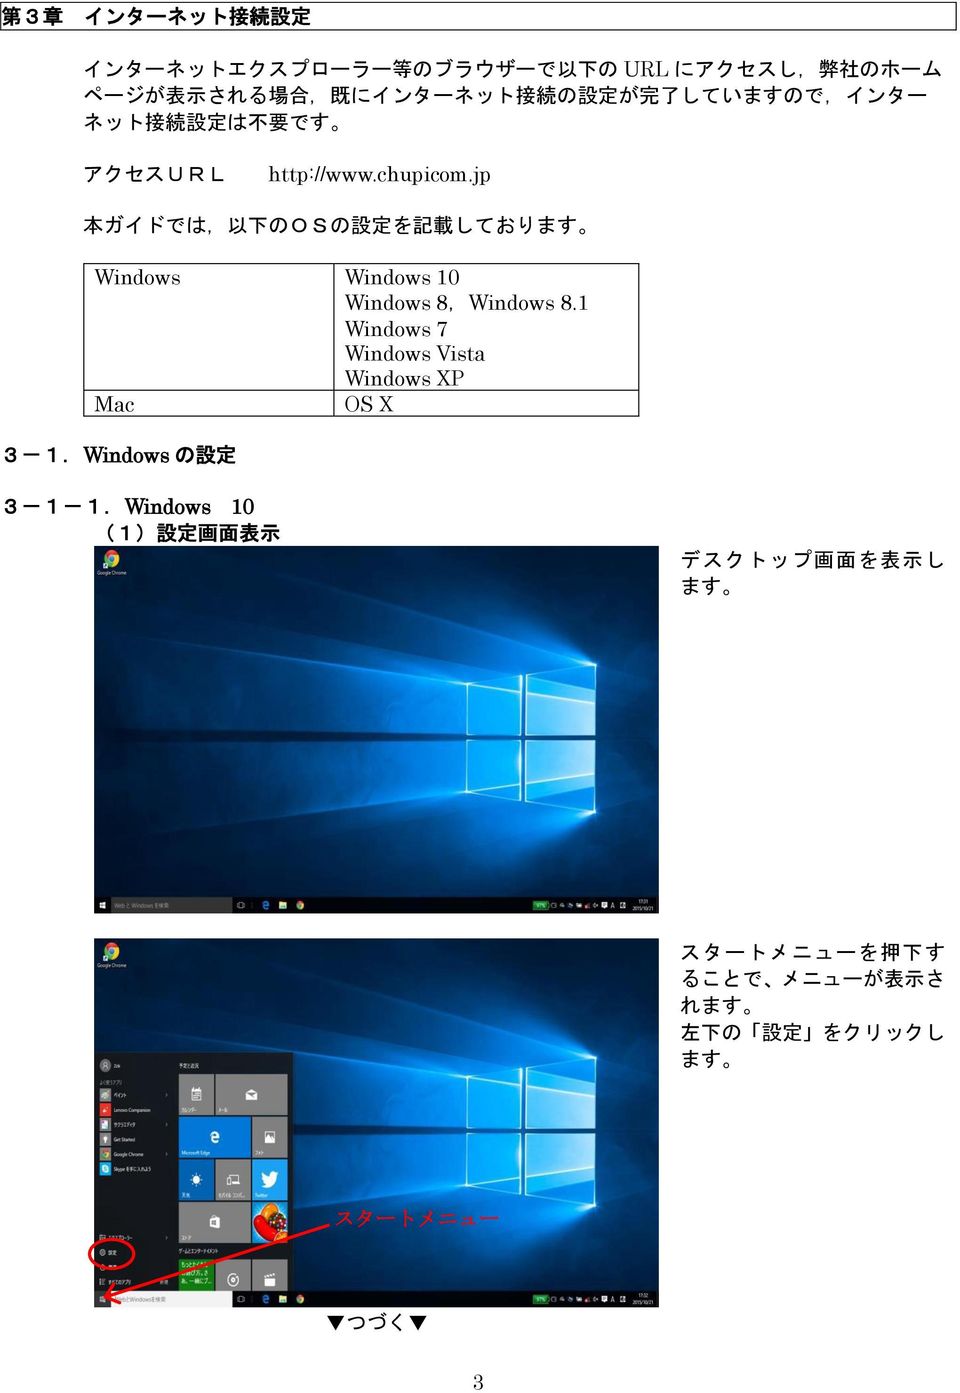 jp 本ガイドでは, 以下の OS の設定を記載しております Windows Windows 10 Windows 8,Windows 8.